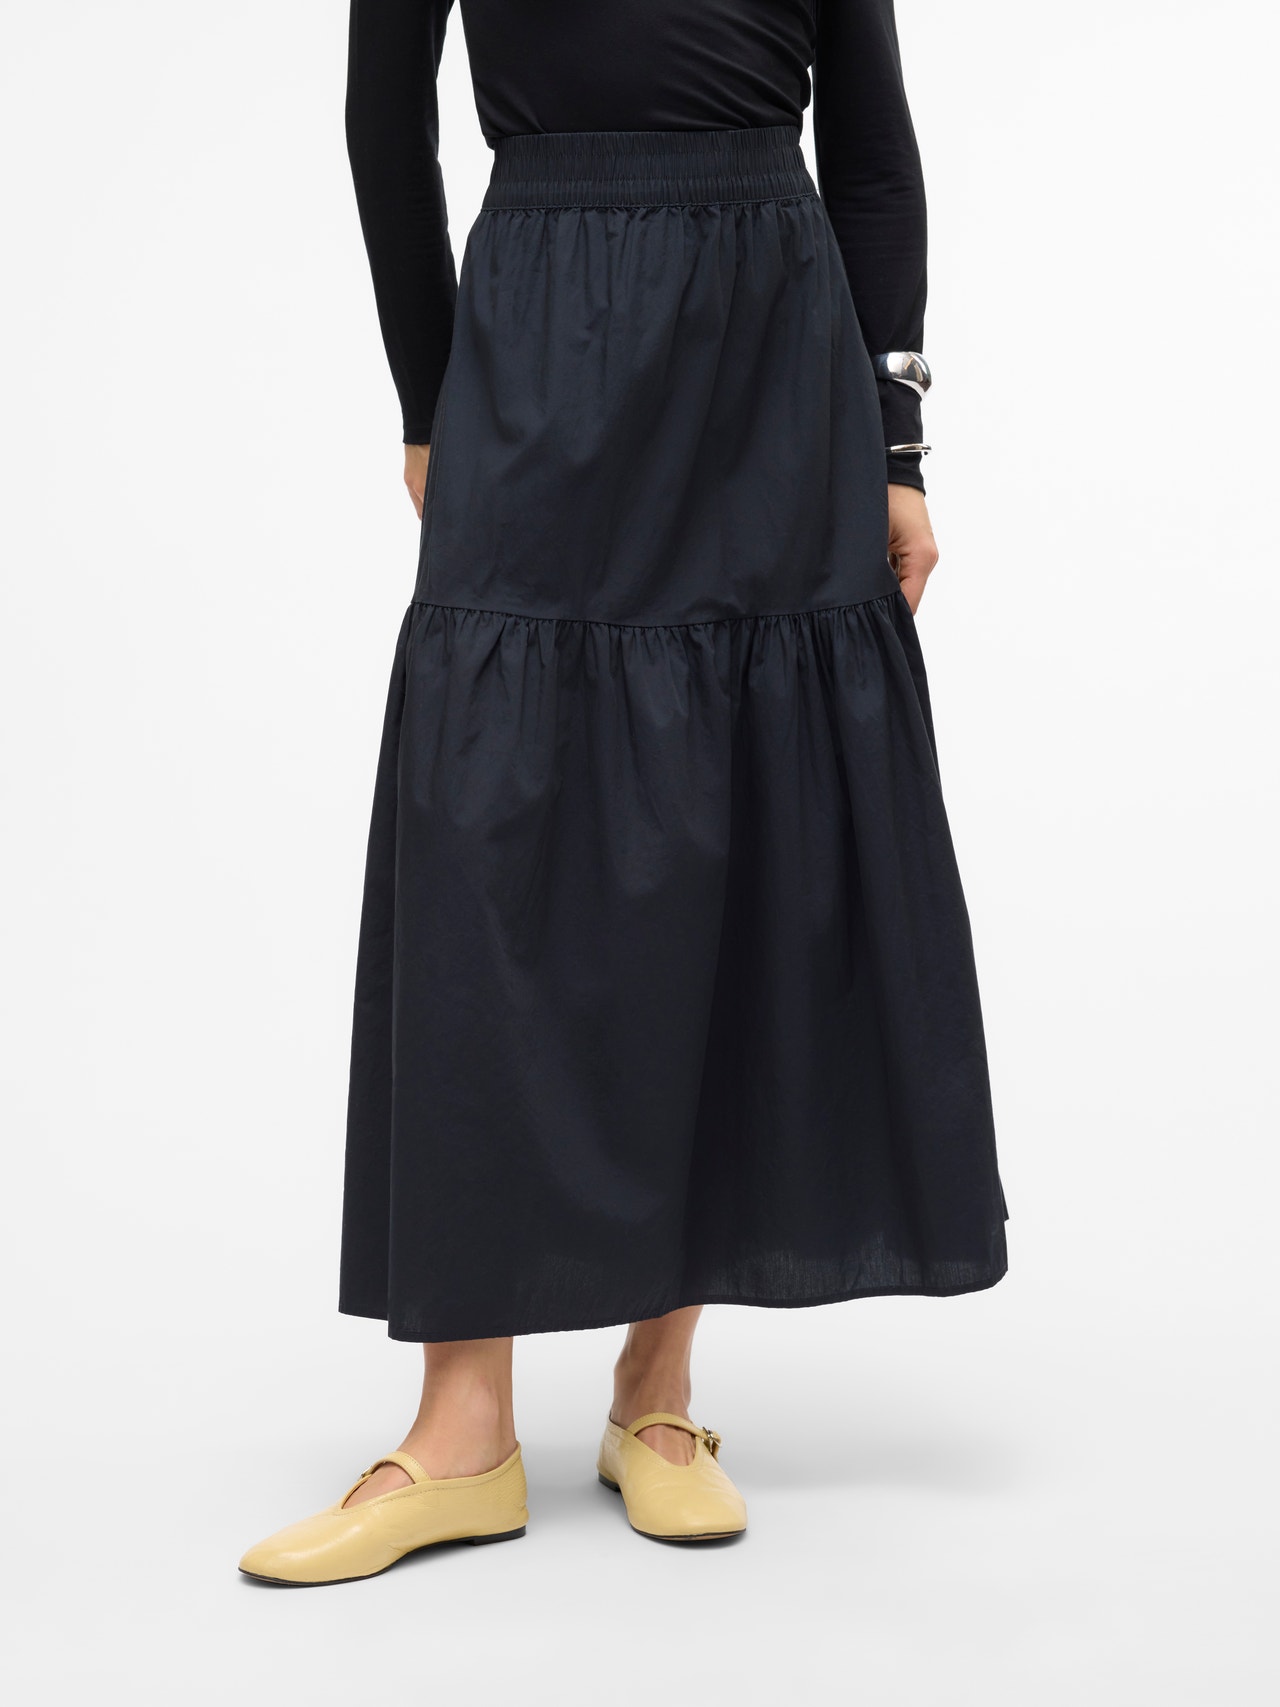 Vero Moda VMCHARLOTTE Long Skirt -Black - 10303657